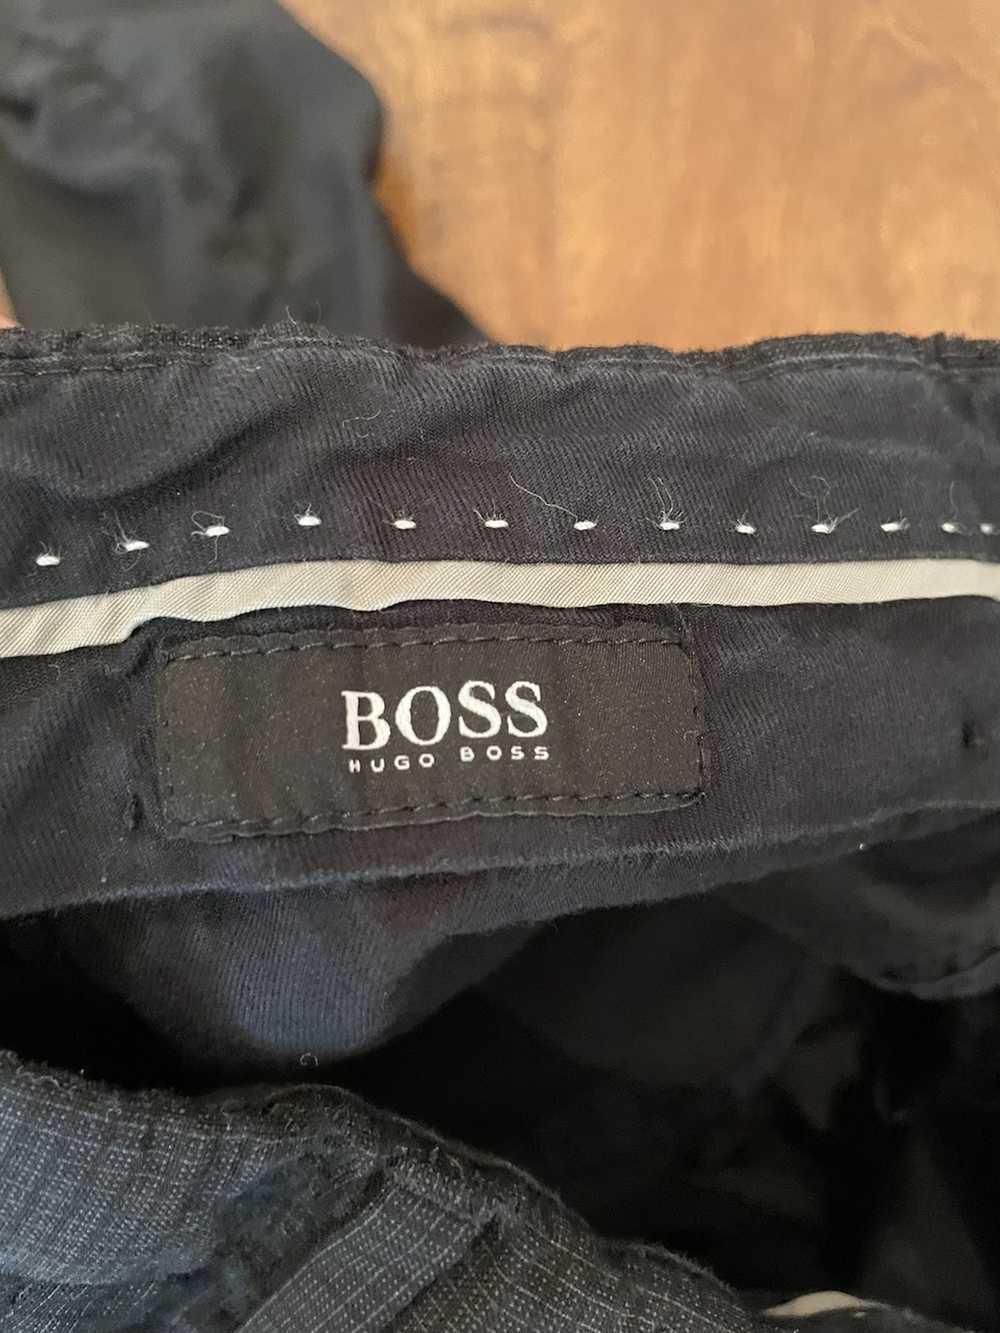 Hugo Boss Hugo Boss Black Trousers - image 4